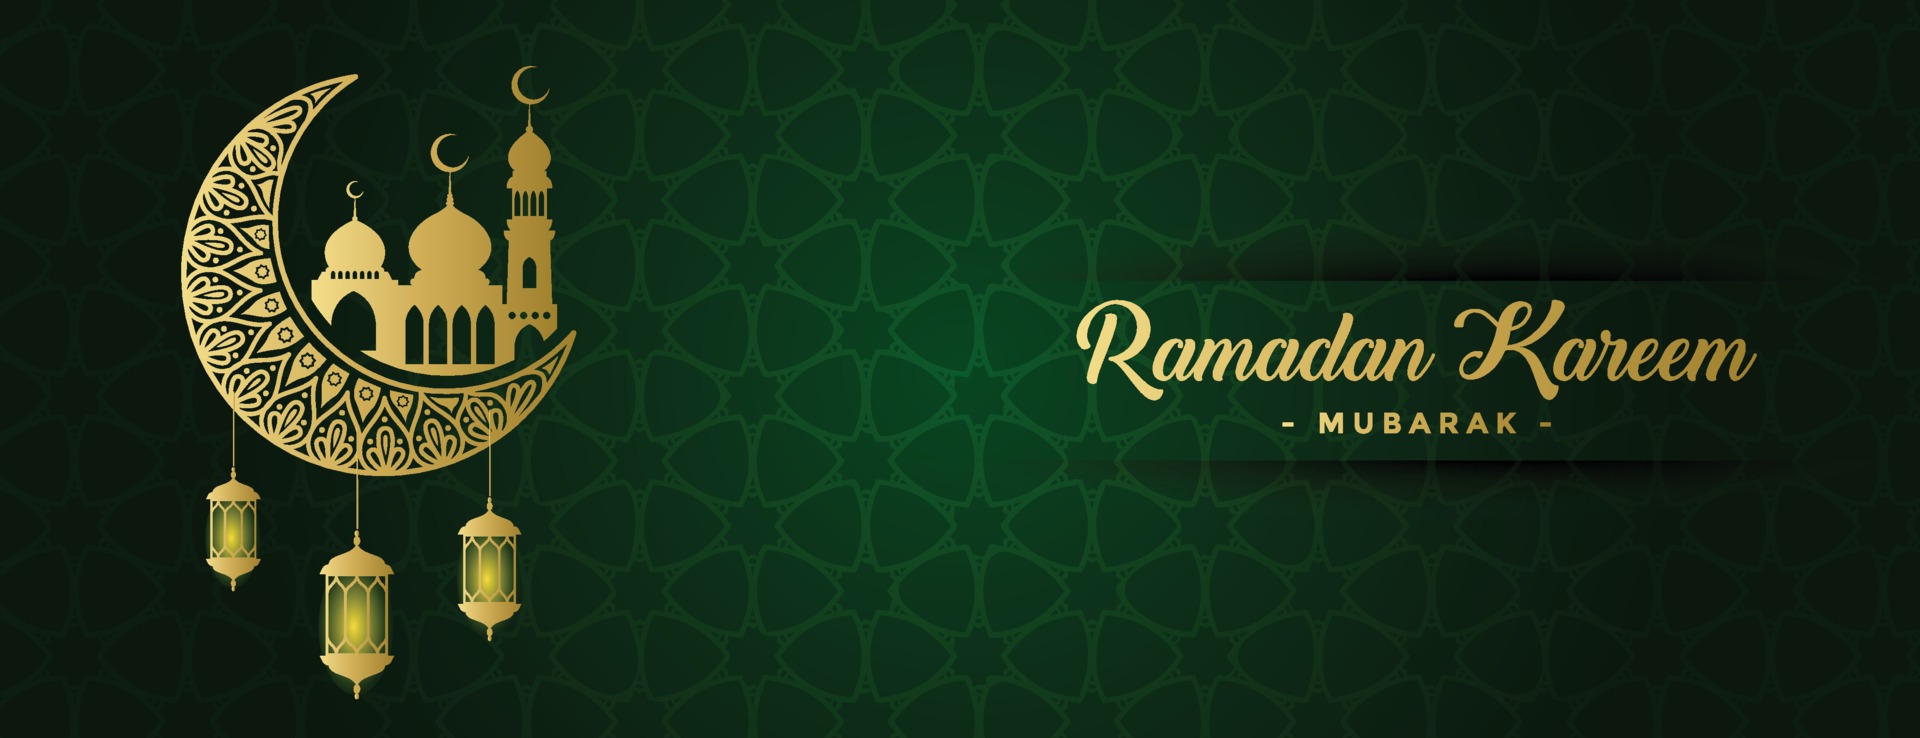 Khám phá nghệ thuật Vector, biểu tượng và đồ hoạ xanh Ramadan cho Tải về miễn phí và cảm nhận sự đột phá của ngành thiết kế đồ họa hiện đại. Tận hưởng những hình ảnh đầy sáng tạo và biểu tượng Hồi giáo lấy cảm hứng từ tháng Ramadan.